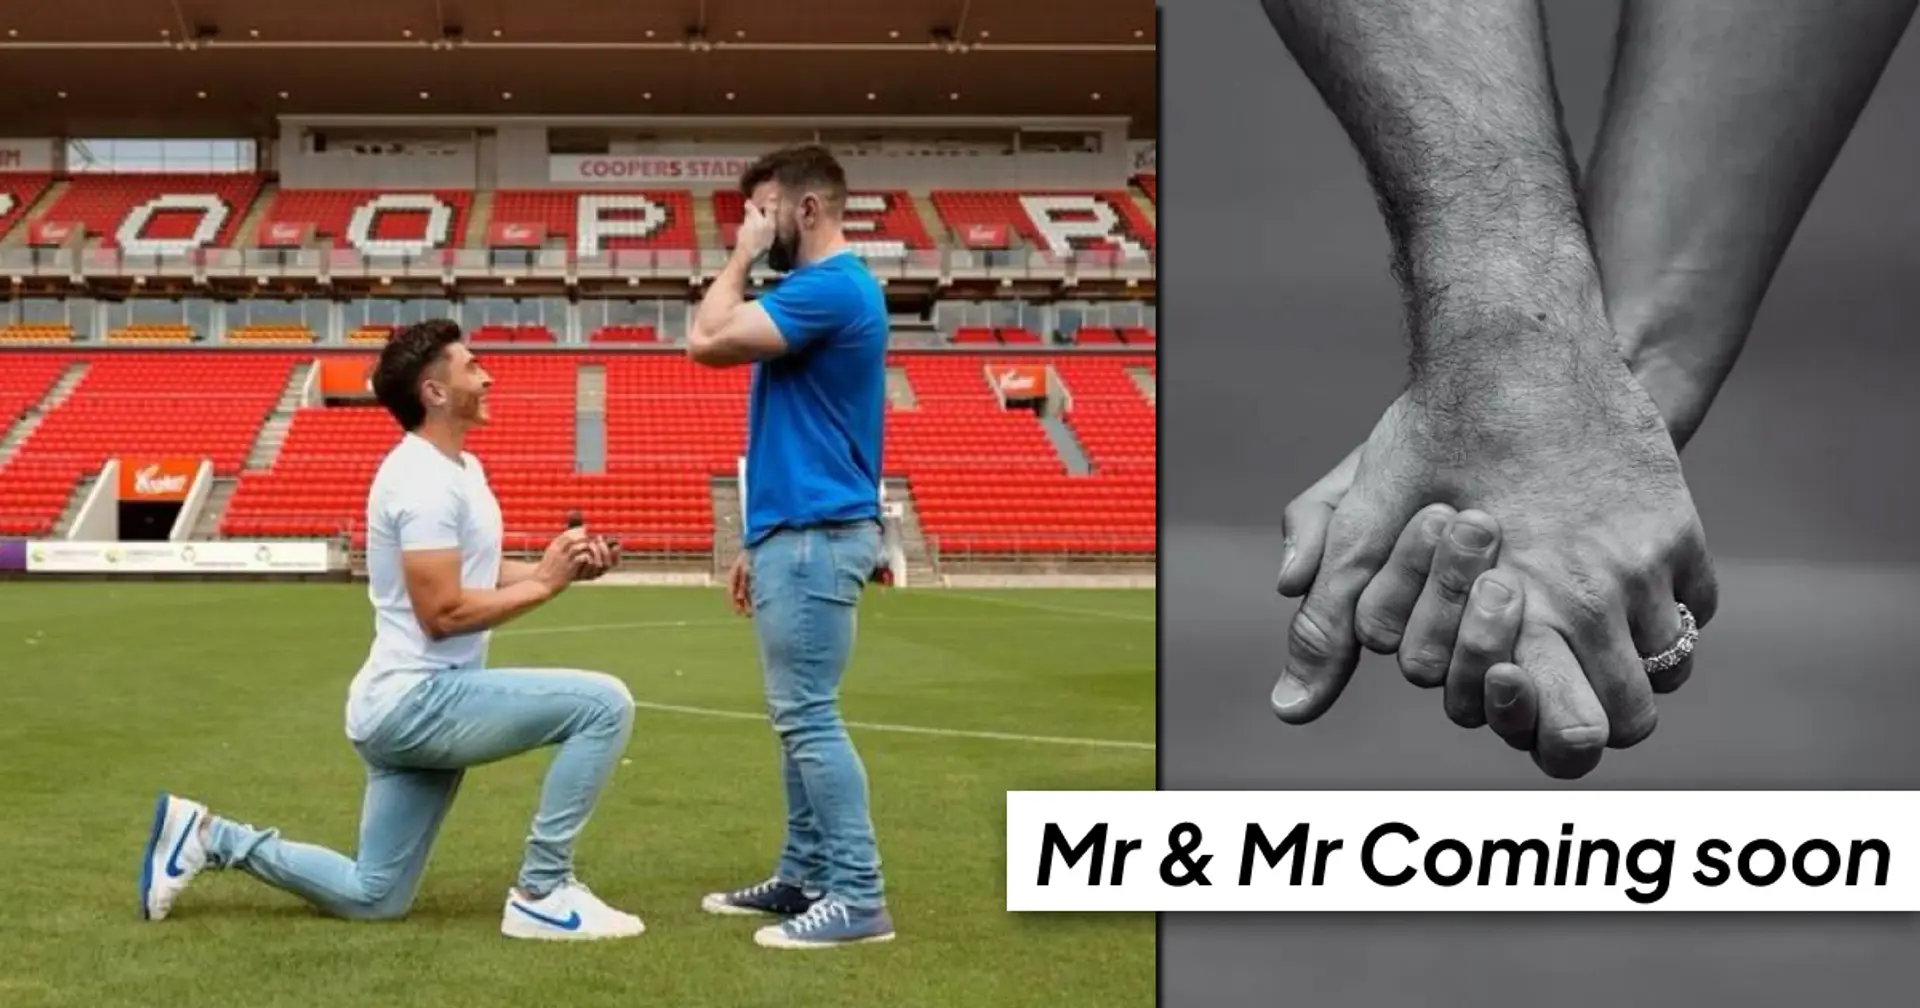 Der offen schwule Fußballer Josh Cavallo macht seinem Verlobten auf dem Spielfeld einen Heiratsantrag